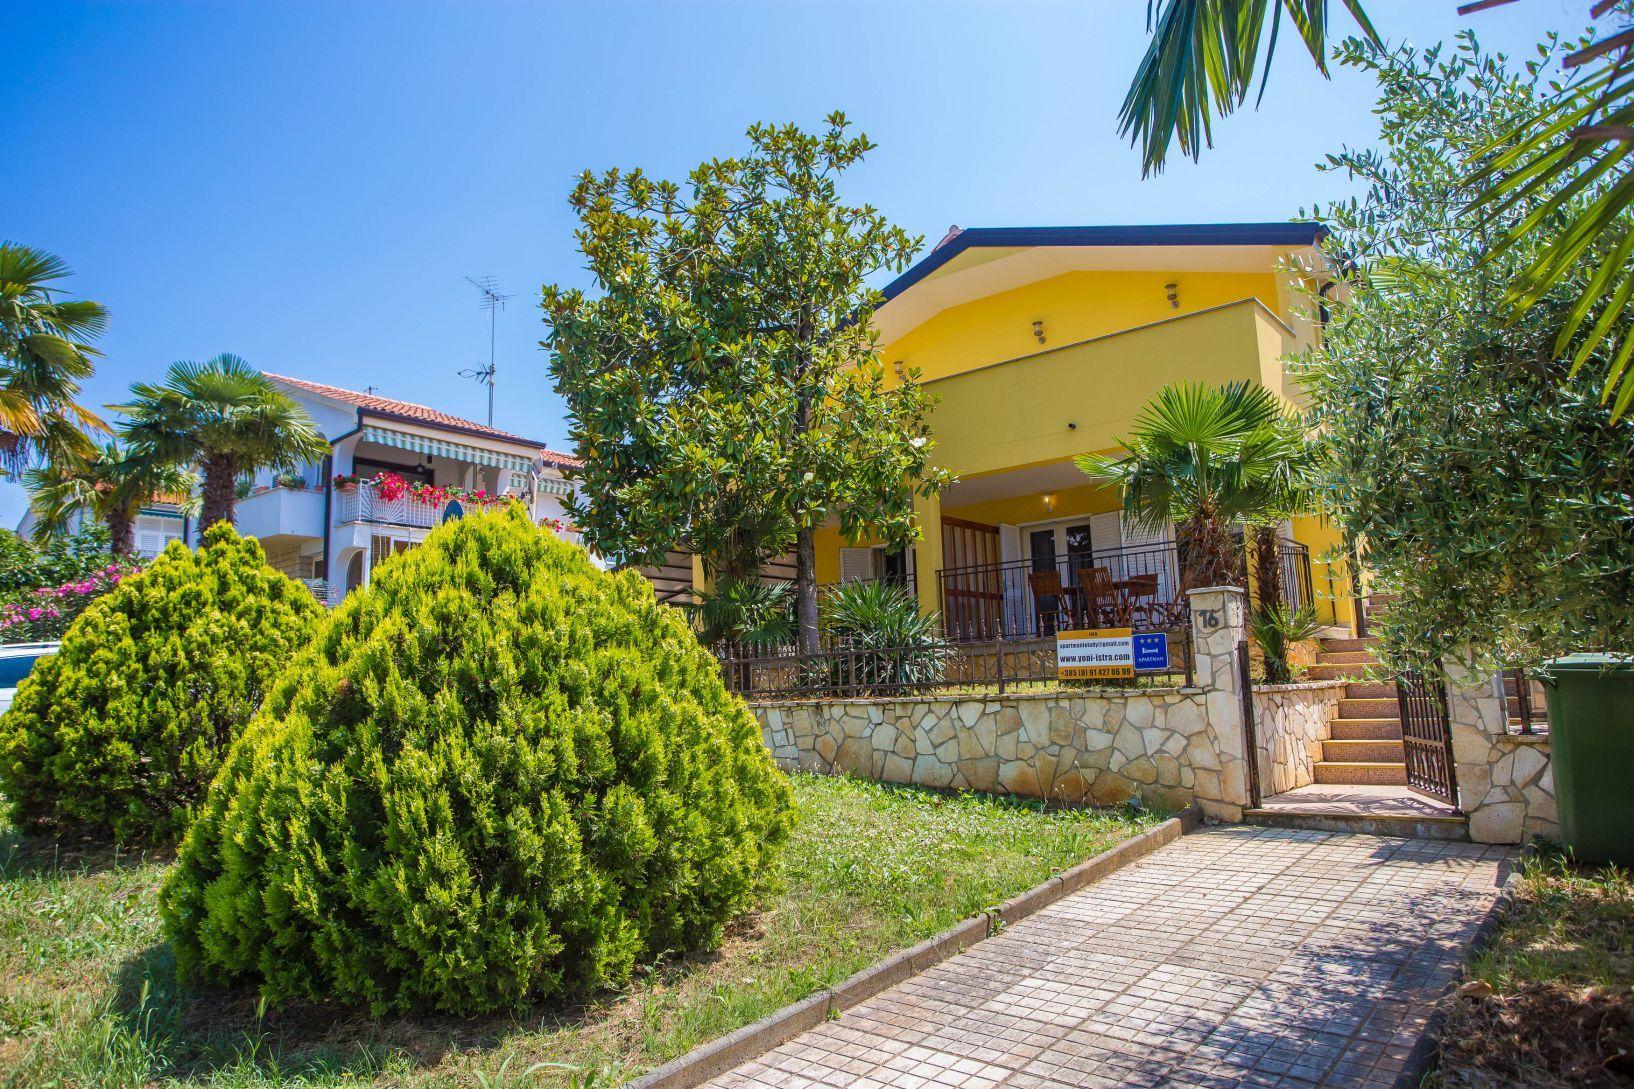 Ferienwohnung für 8 Personen ca. 150 m²  Ferienhaus in Istrien